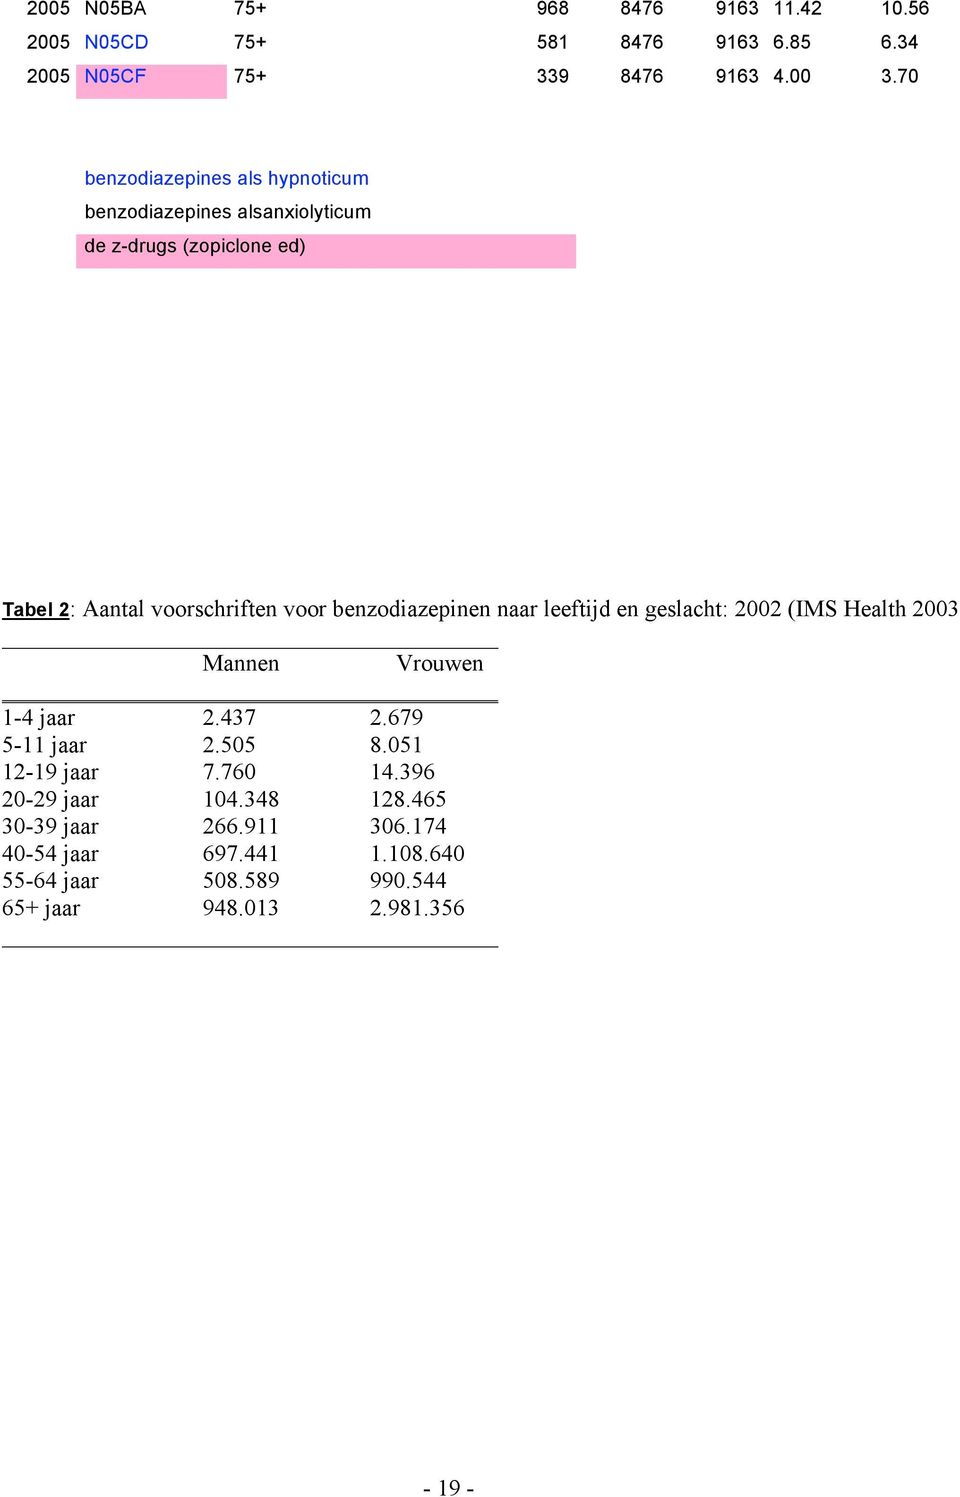 benzodiazepinen naar leeftijd en geslacht: 2002 (IMS Health 2003 Mannen Vrouwen 1-4 jaar 2.437 2.679 5-11 jaar 2.505 8.